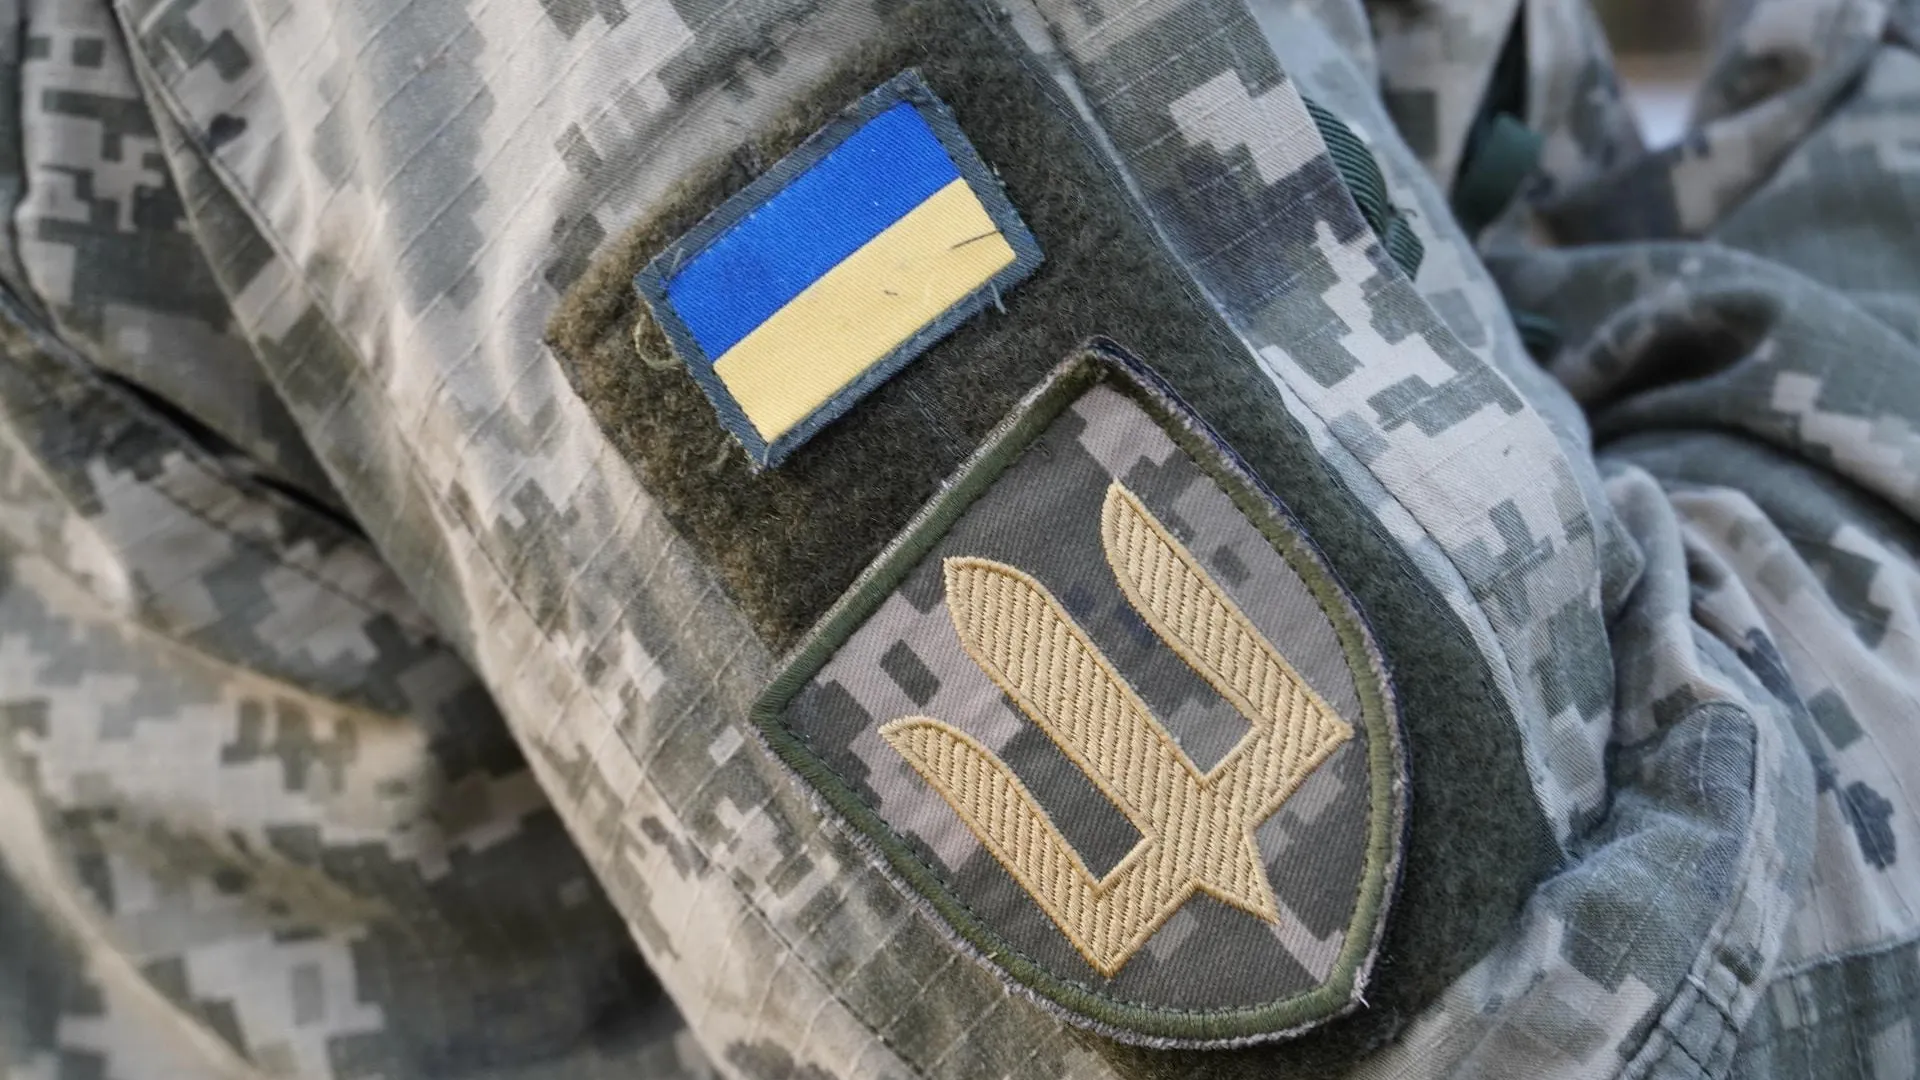 Военный обозреватель Шлепченко рассказал, какая потеря будет болезненной для ВСУ